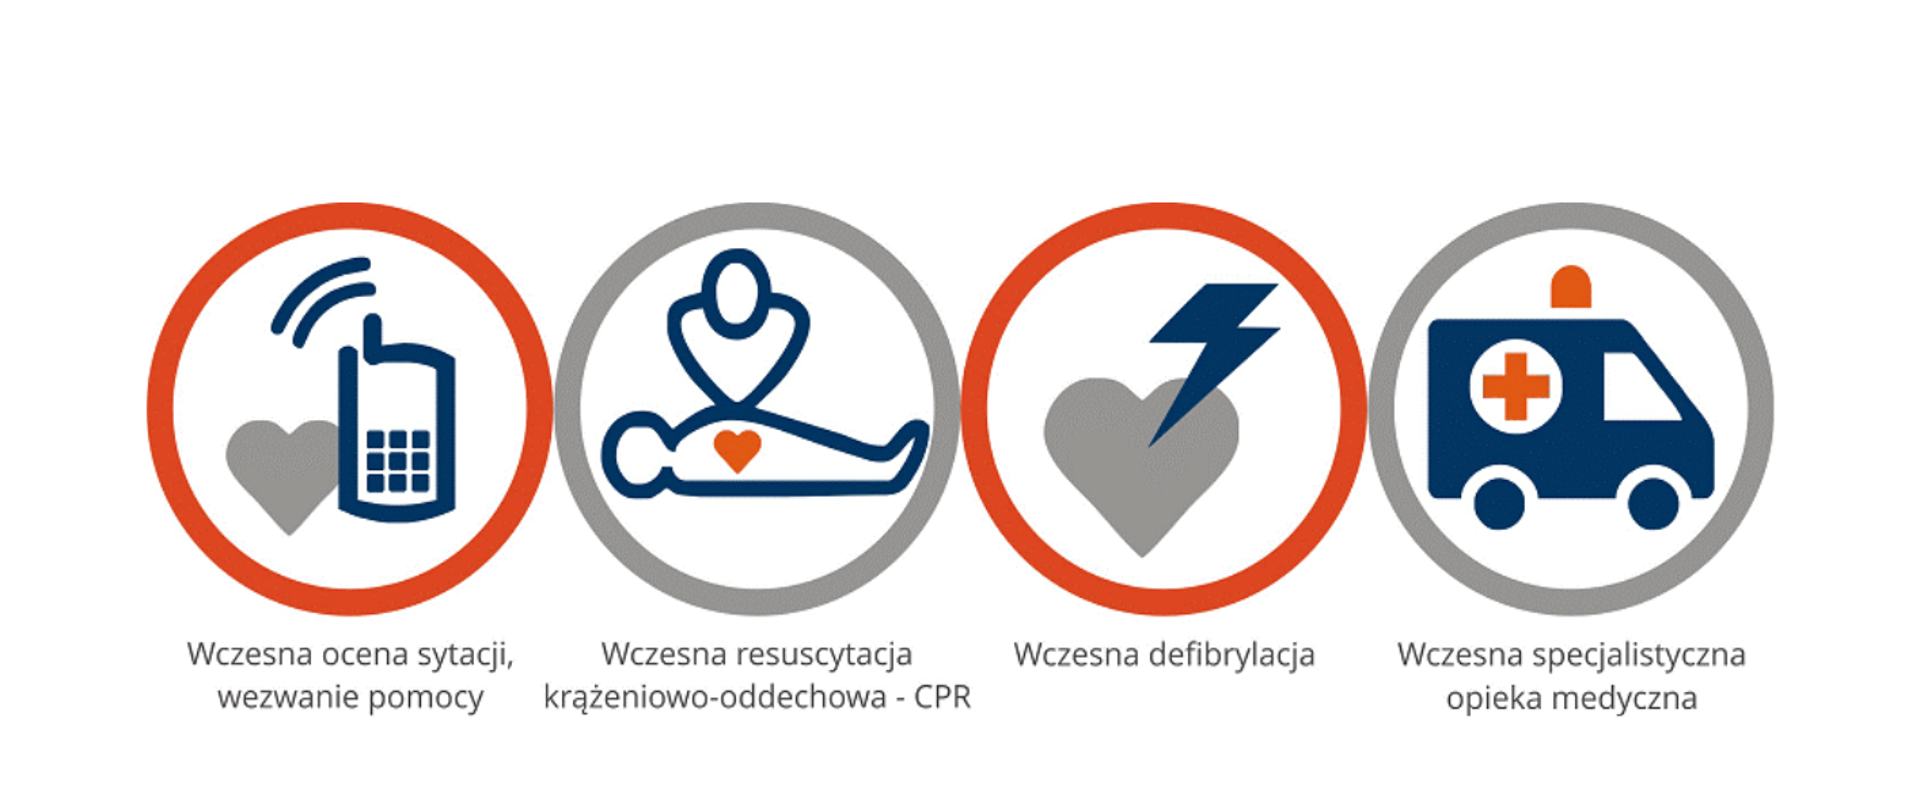 Grafika przedstawiająca łańcuch przeżycia: wczesna ocena sytuacji, wezwanie pomocy, wczesna resuscytacja krążeniowo-oddechowa, wczesna defibrylacja, wczesna specjalistyczna opieka medyczna